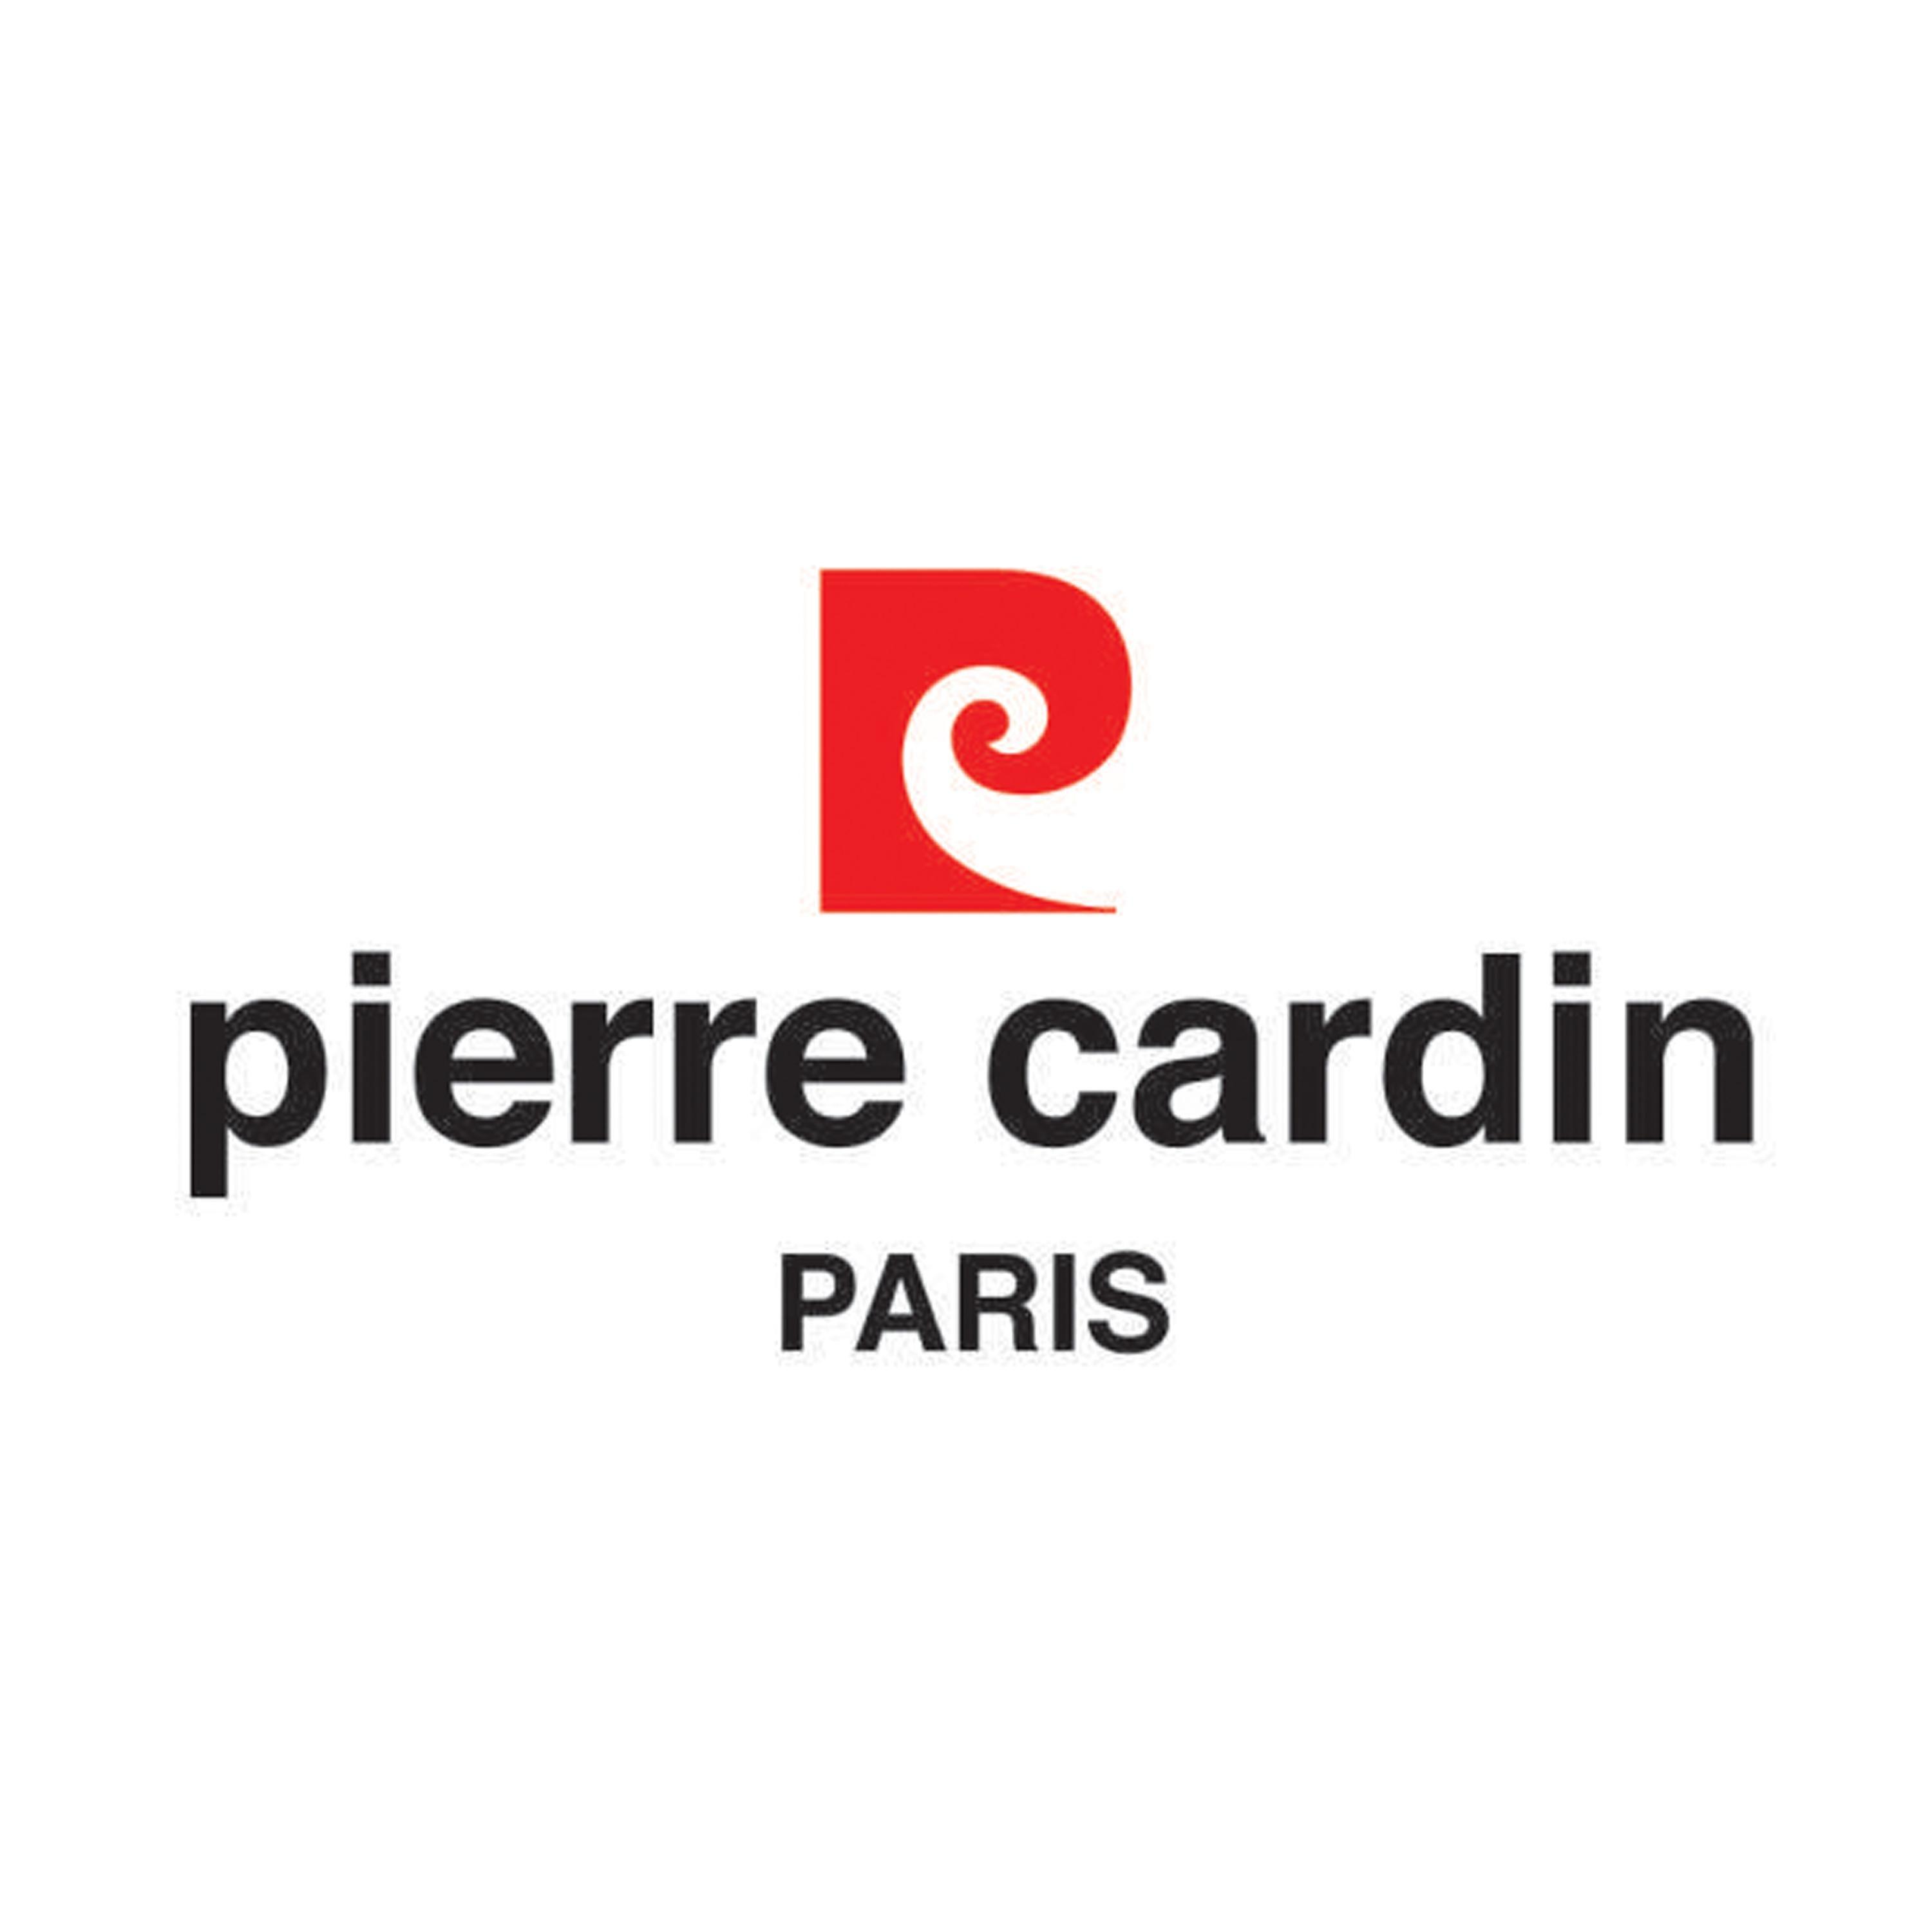 Pierre Cardin Logo - Pierre Cardin Cufflinks For Sale at 1stdibs